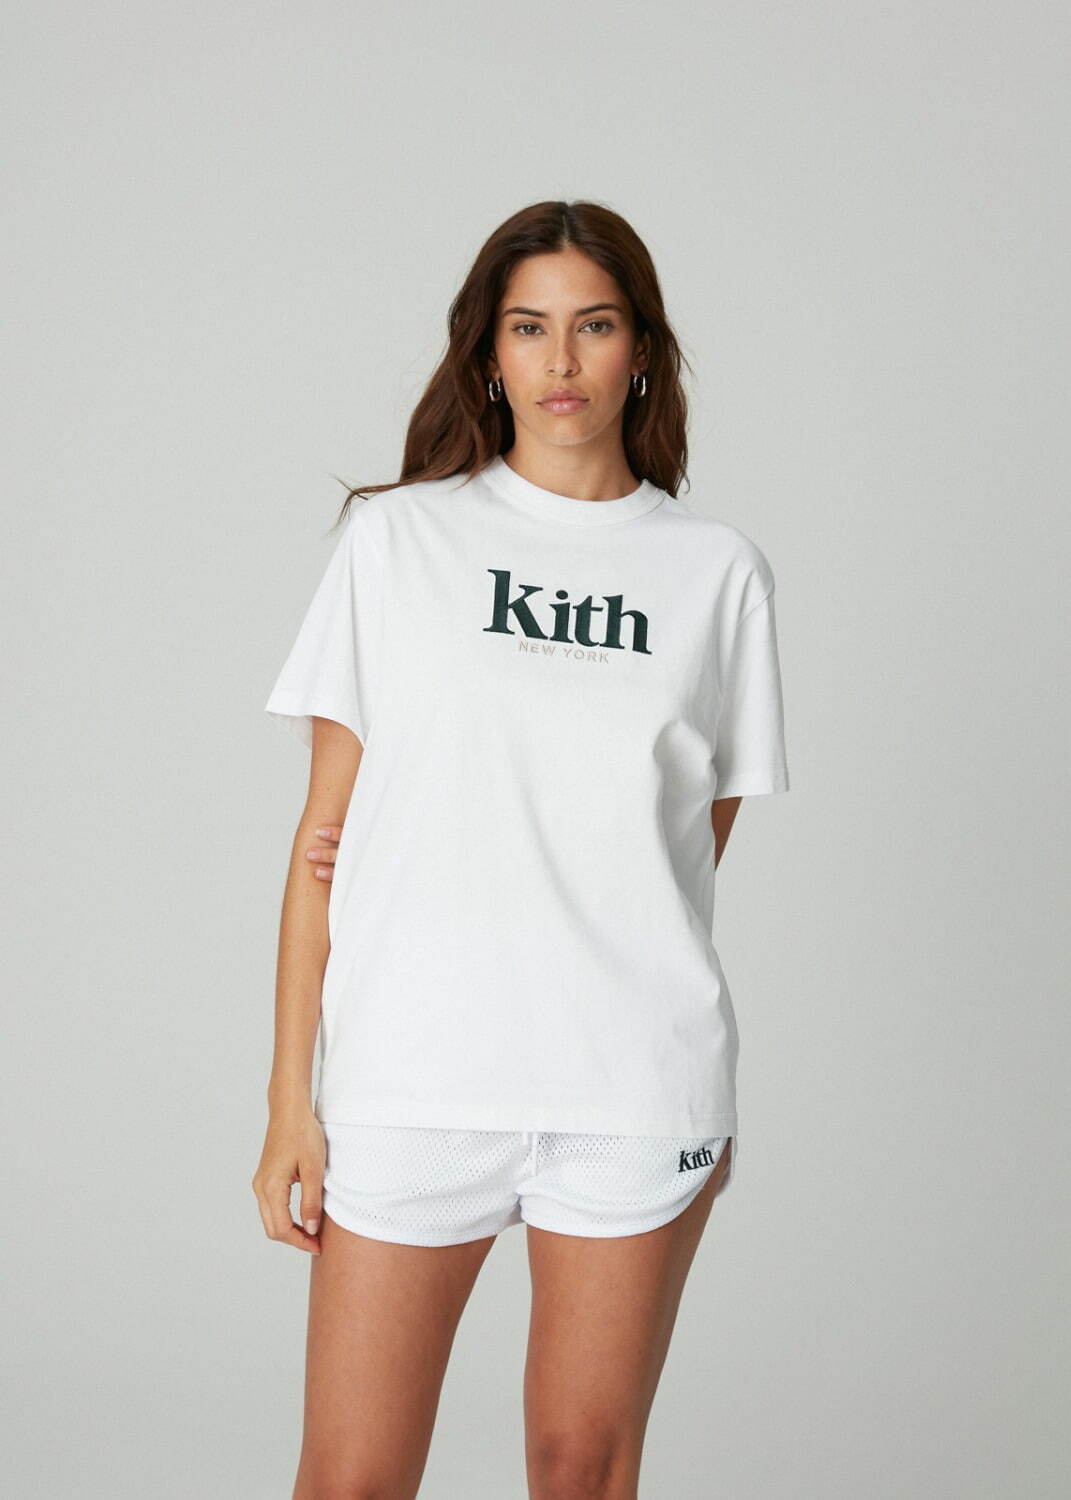 キス(Kith) 2021年夏ウィメンズコレクション  - 写真151